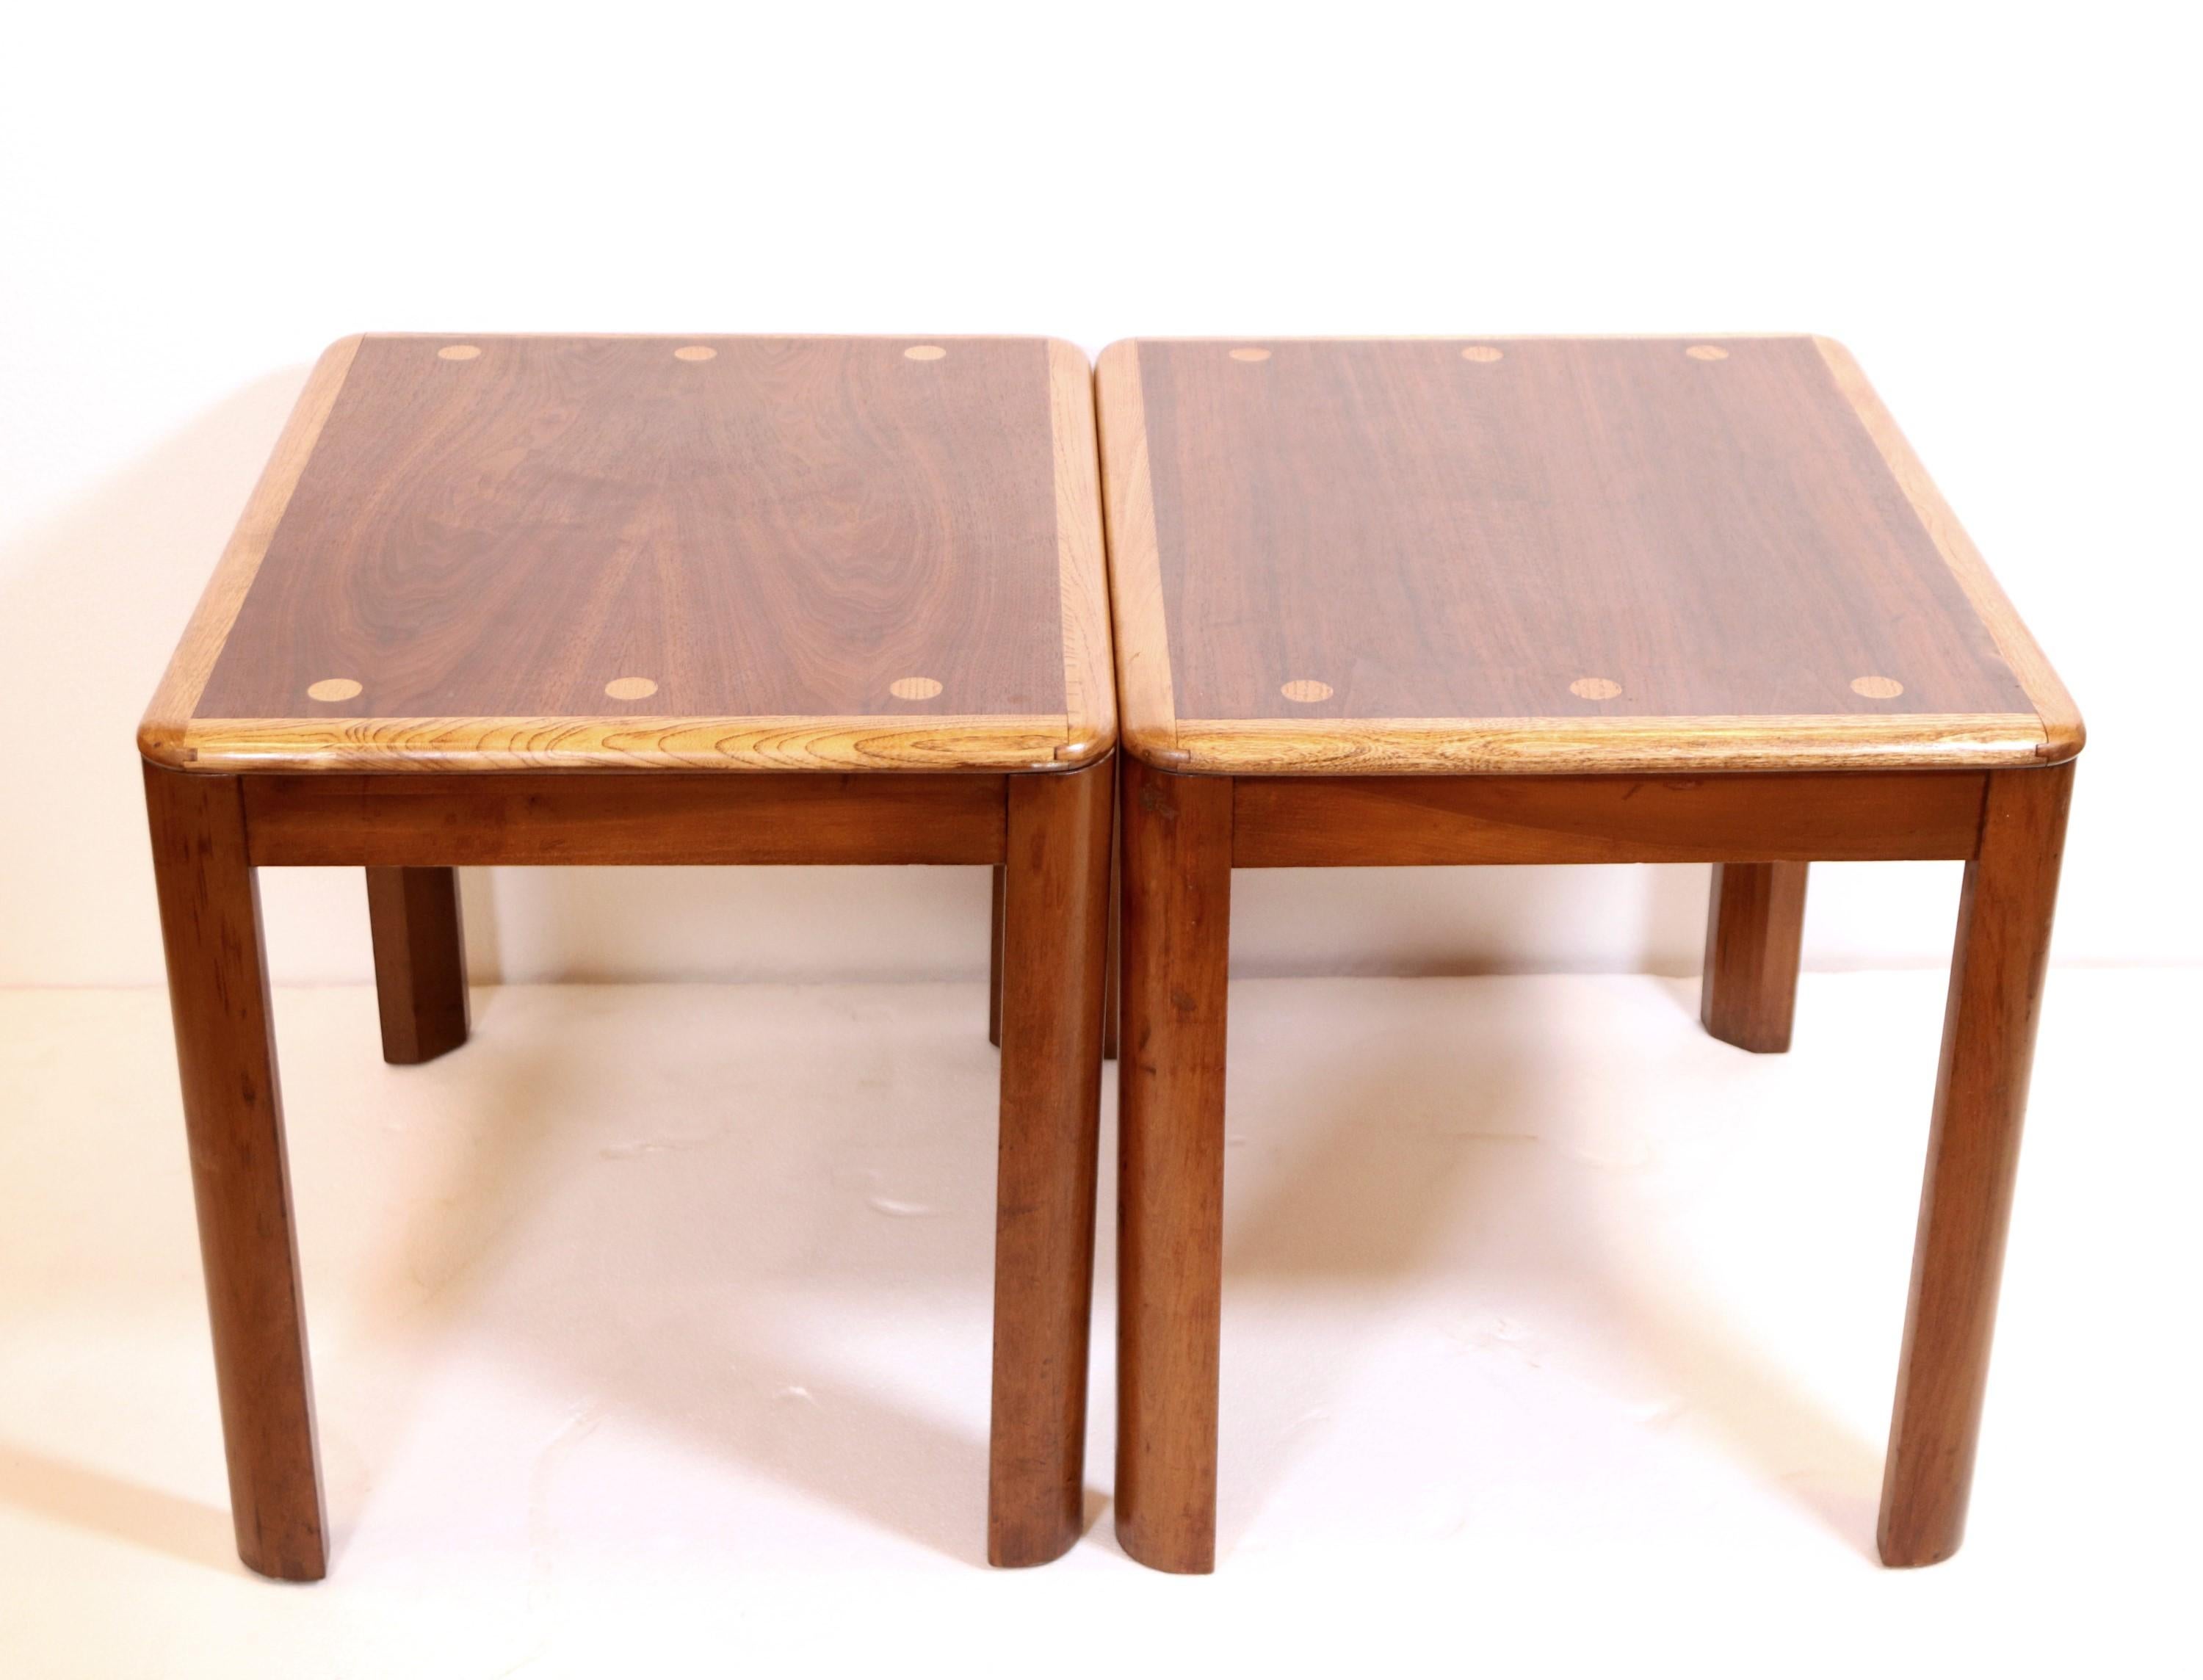 Ein Paar Beistelltische aus Nussbaum und Eiche von Lane's Furniture.  Jeder Tisch ist mit drei Punkten auf jeder Seite verziert.  Die Lane's Modellnummer lautet 1595 05. Seriennummer 2672010. Der Preis gilt für das Paar. Bitte beachten Sie, dass